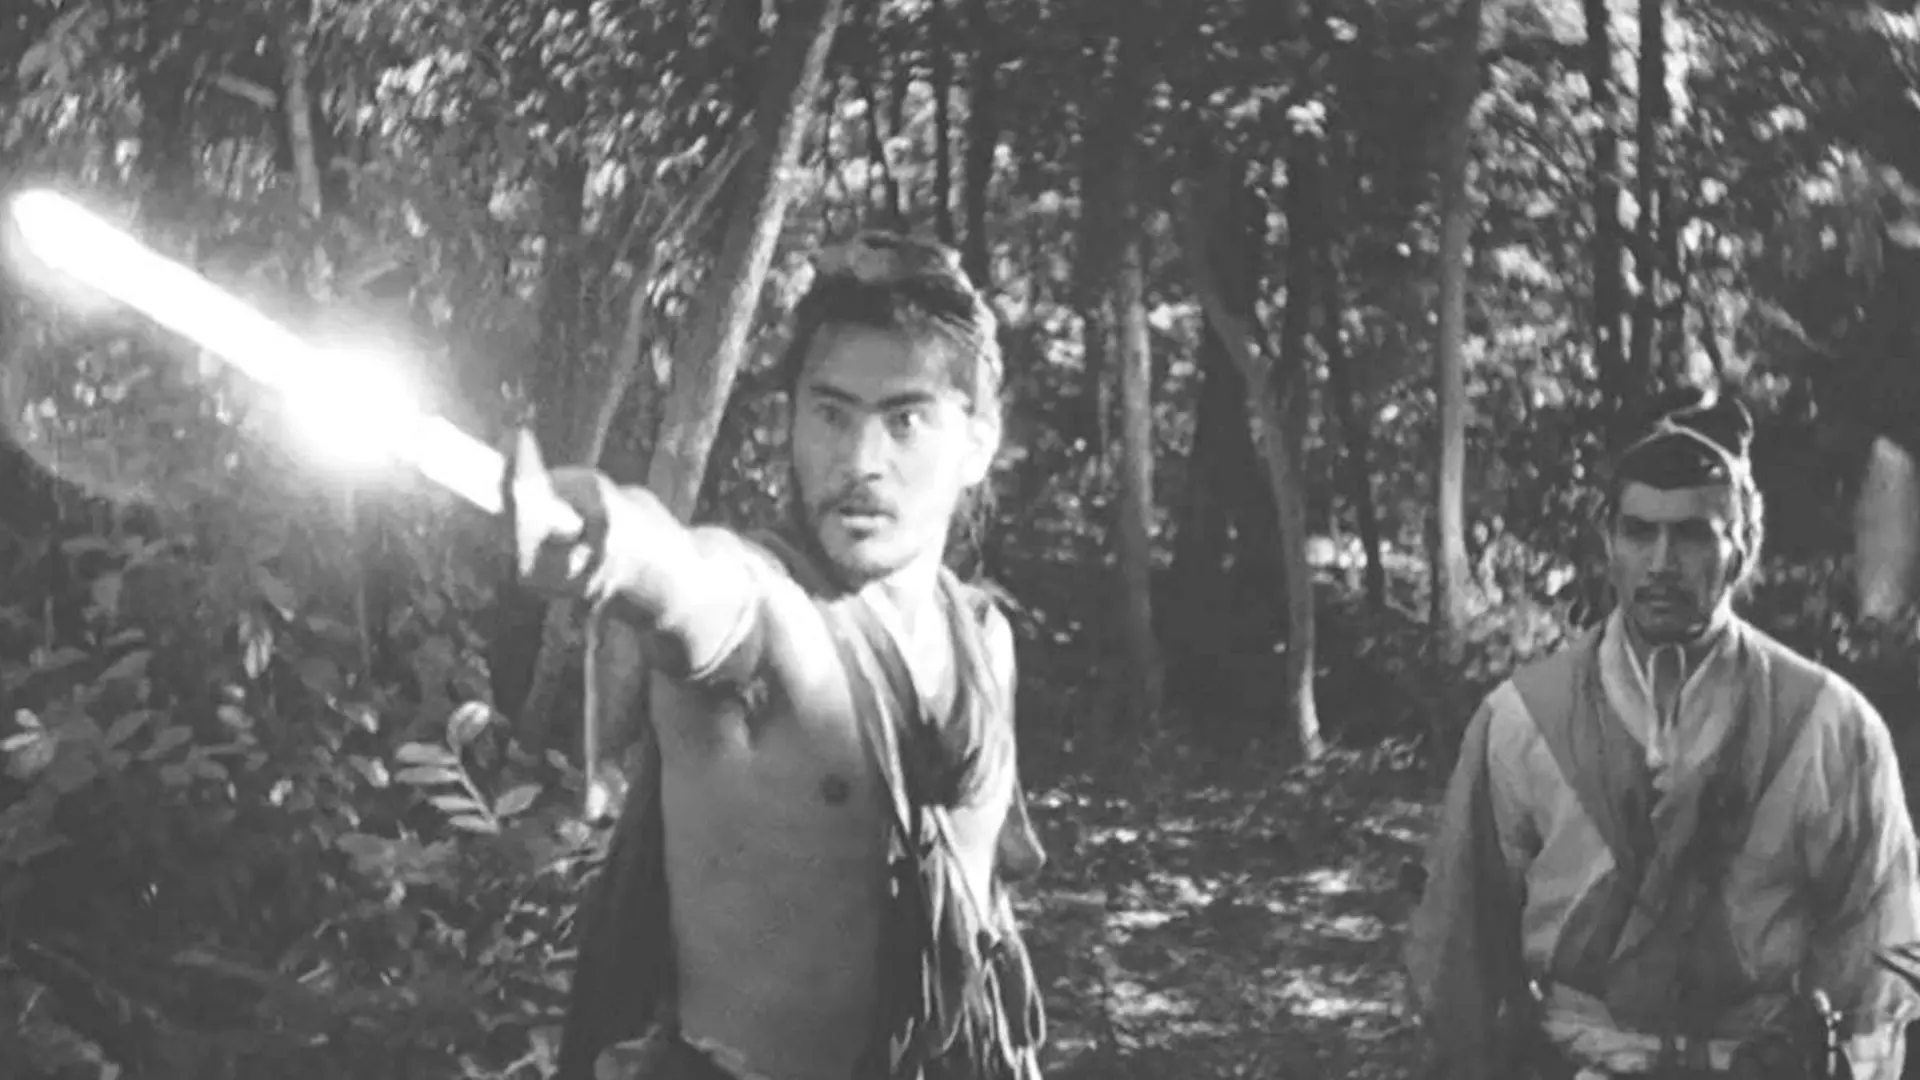 توشیرو میفونه در خال مبارزه در فیلم راشومون